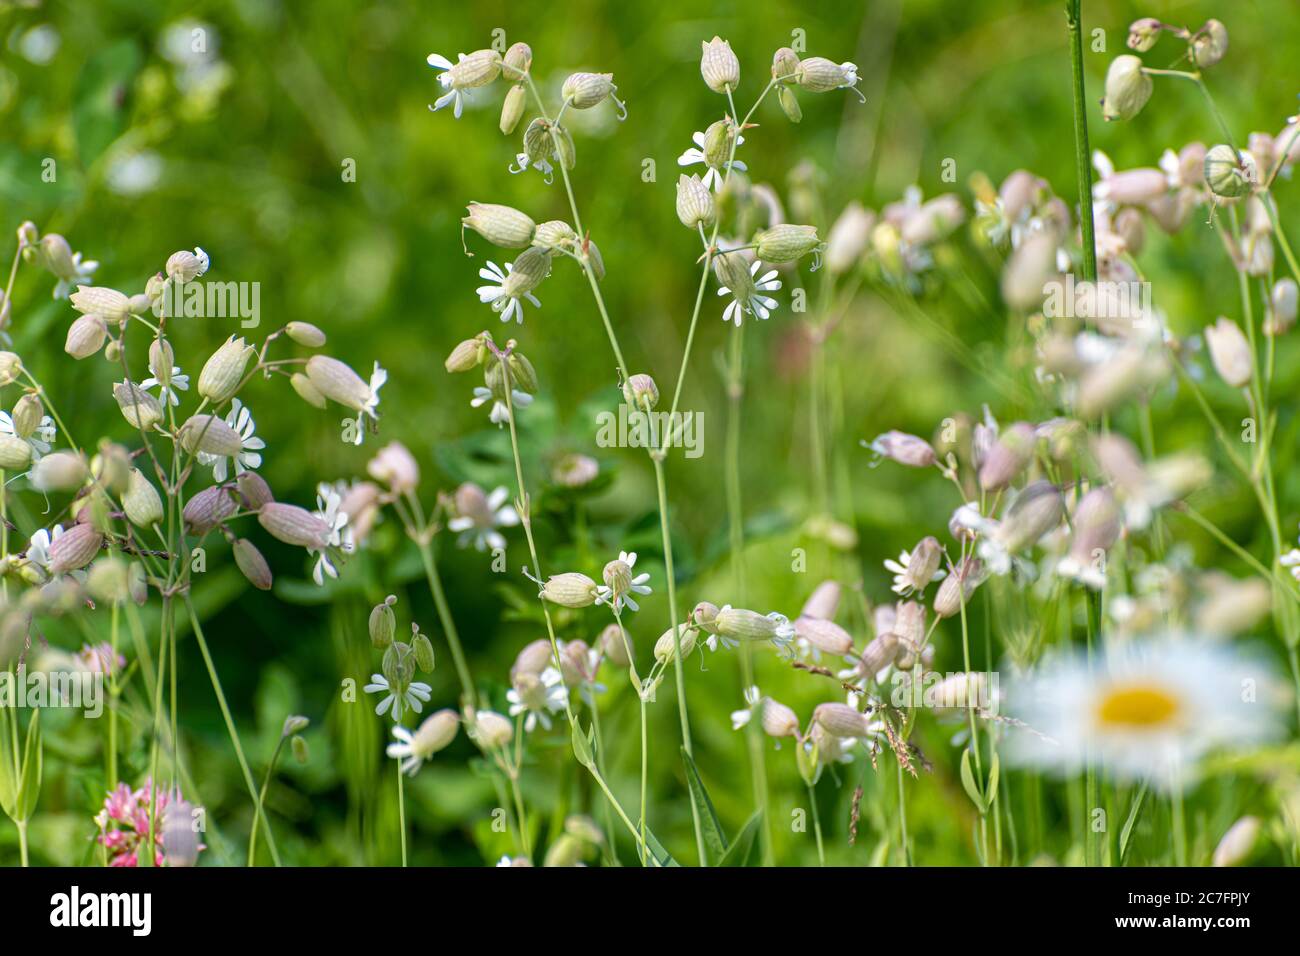 Silene vulgaris - wild flower of the carnation family Stock Photo